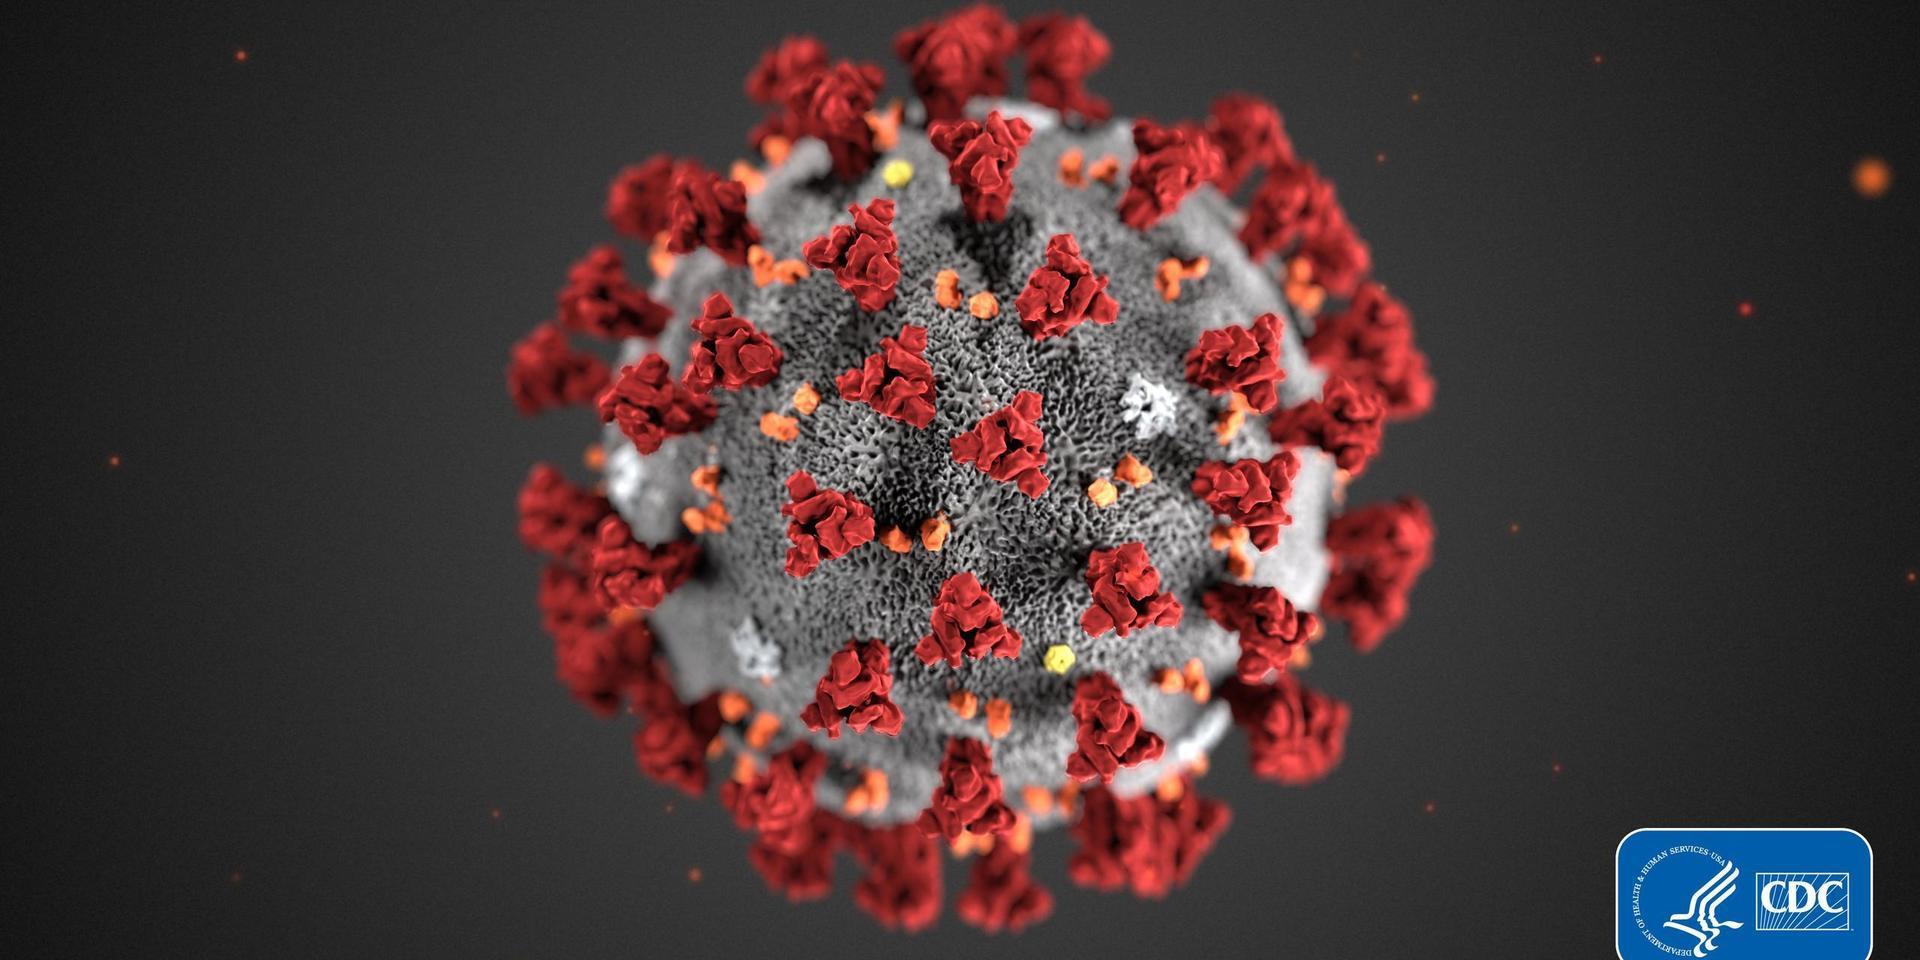 Det virus som nu riskerar att spridas över världen är ett så kallat coronavirus, ett virus som två gånger tidigare har orsakat smittspridning, sars 2003 och mers 2012.